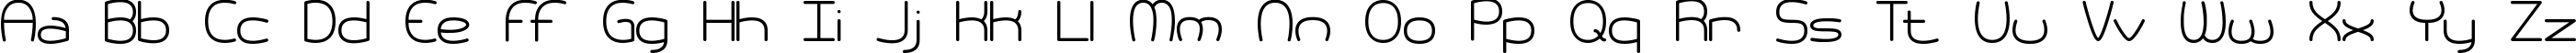 Пример написания английского алфавита шрифтом Pneumatics BRK